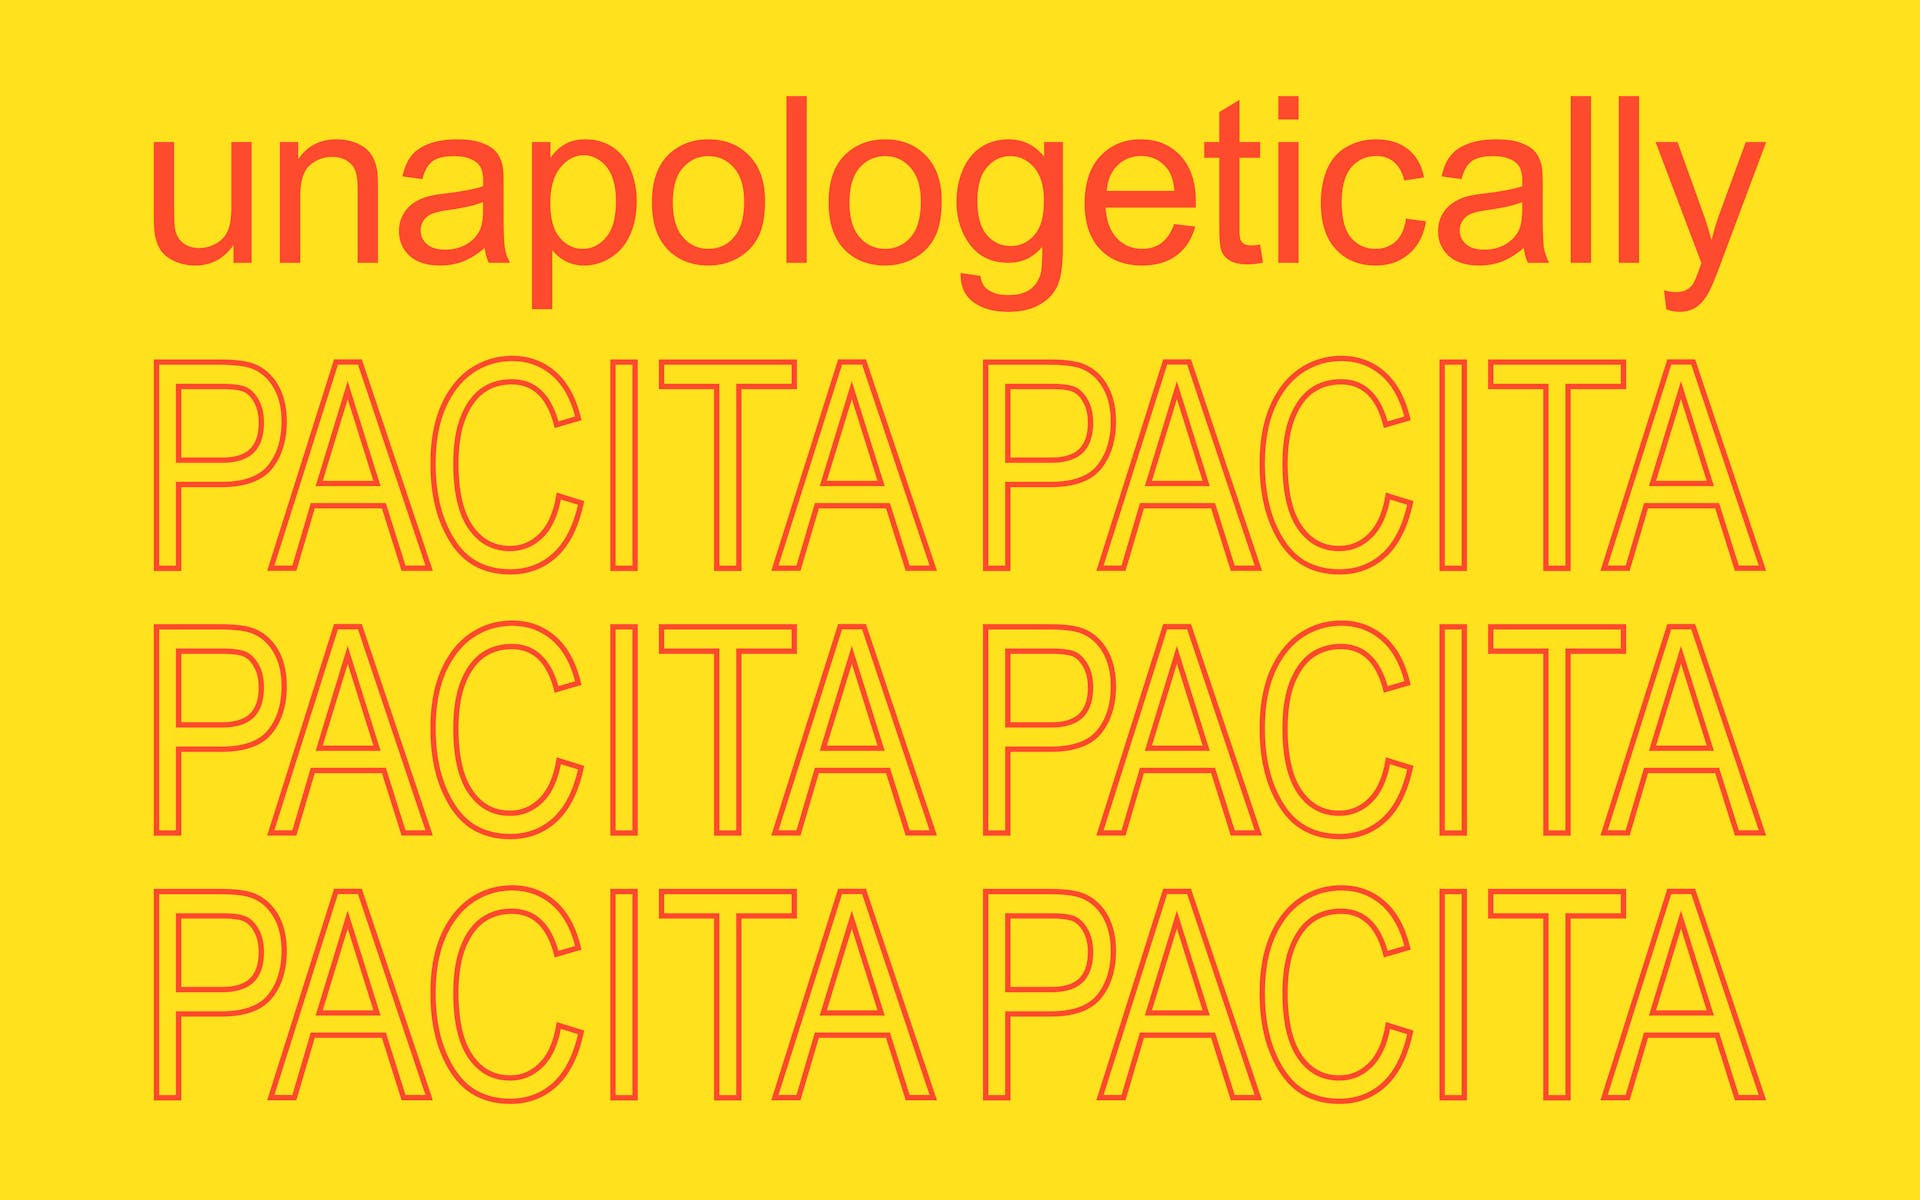 Logo: Unapologetically Pacita